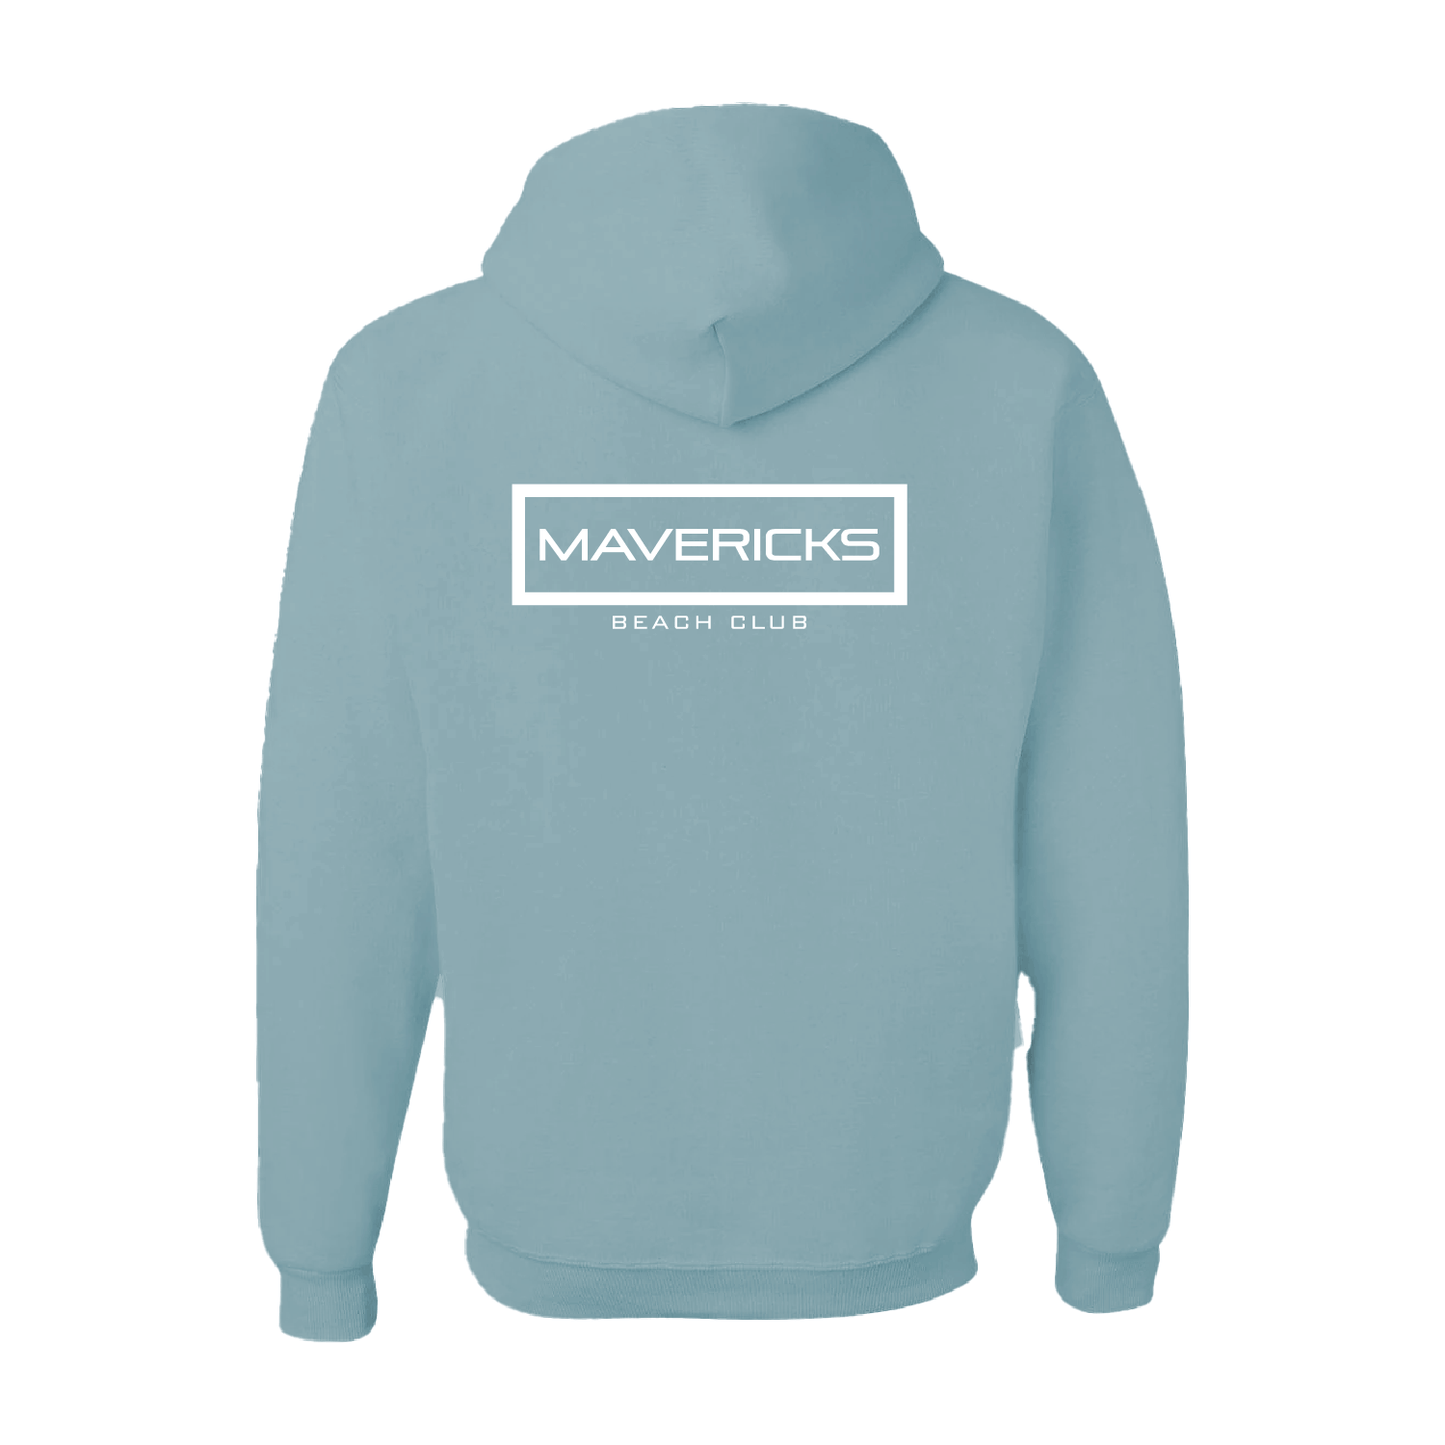 Mavericks beach club merch, hoodie, san diego, california